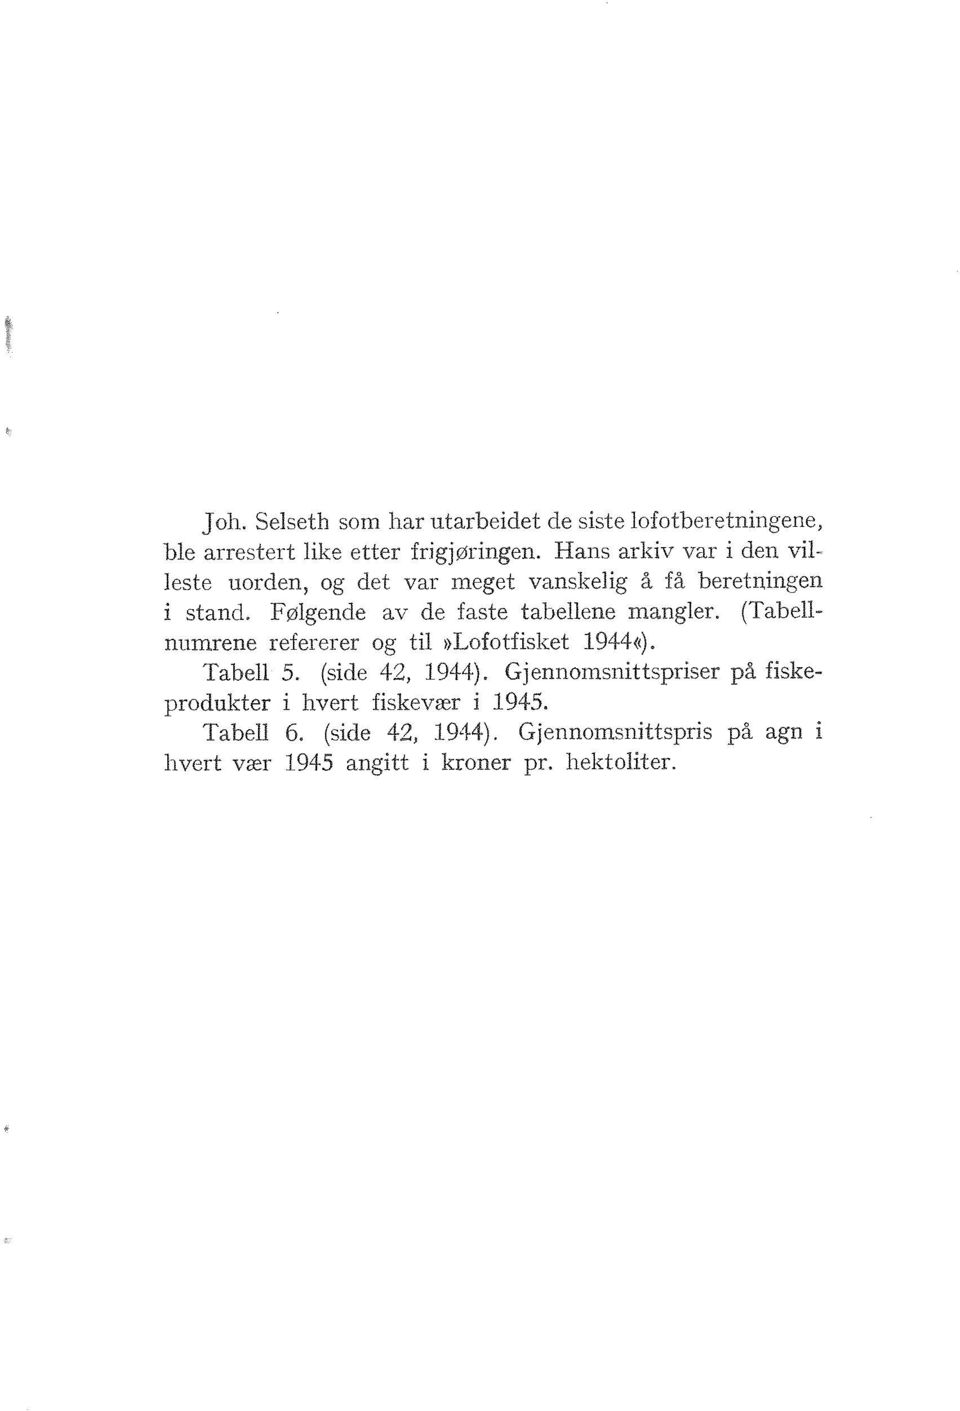 Følgende av de faste tabellene mangler. (Tabellnumrene refererer og til >)Lofotfisliet 1944<(). Tabell 5. (sid.